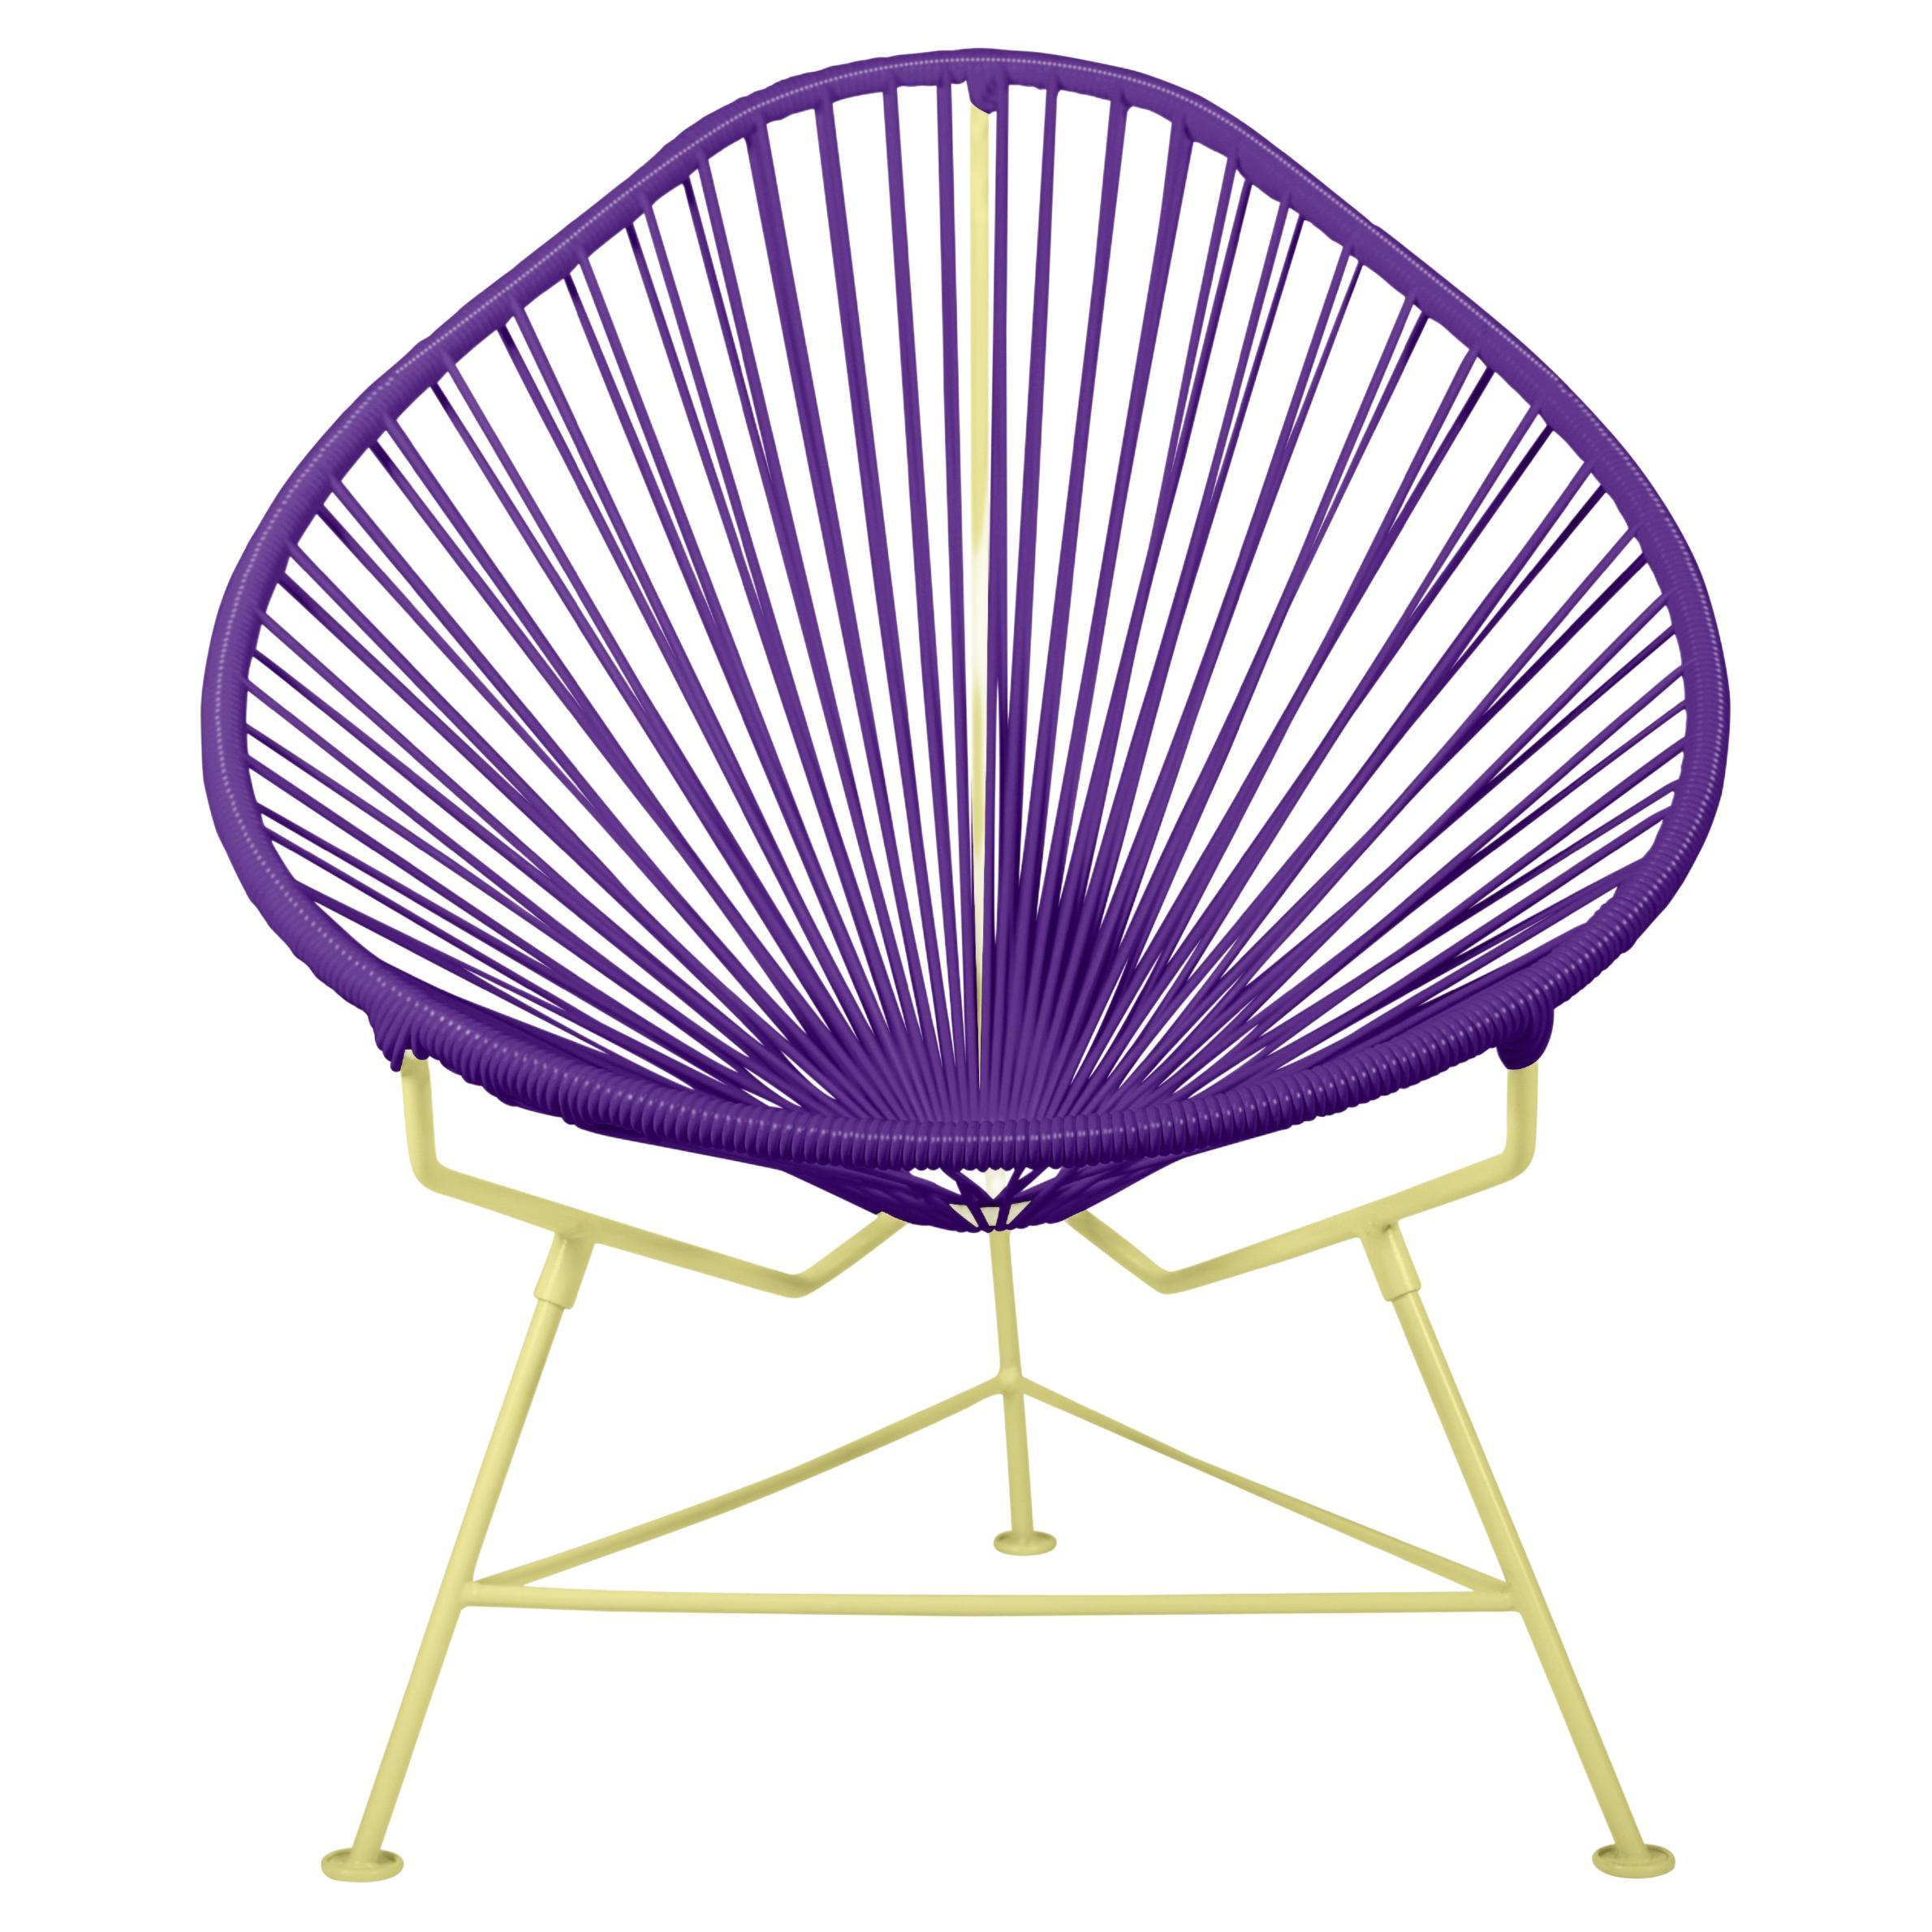 Innit Designs fauteuil Acapulco tissage violet sur cadre jaune